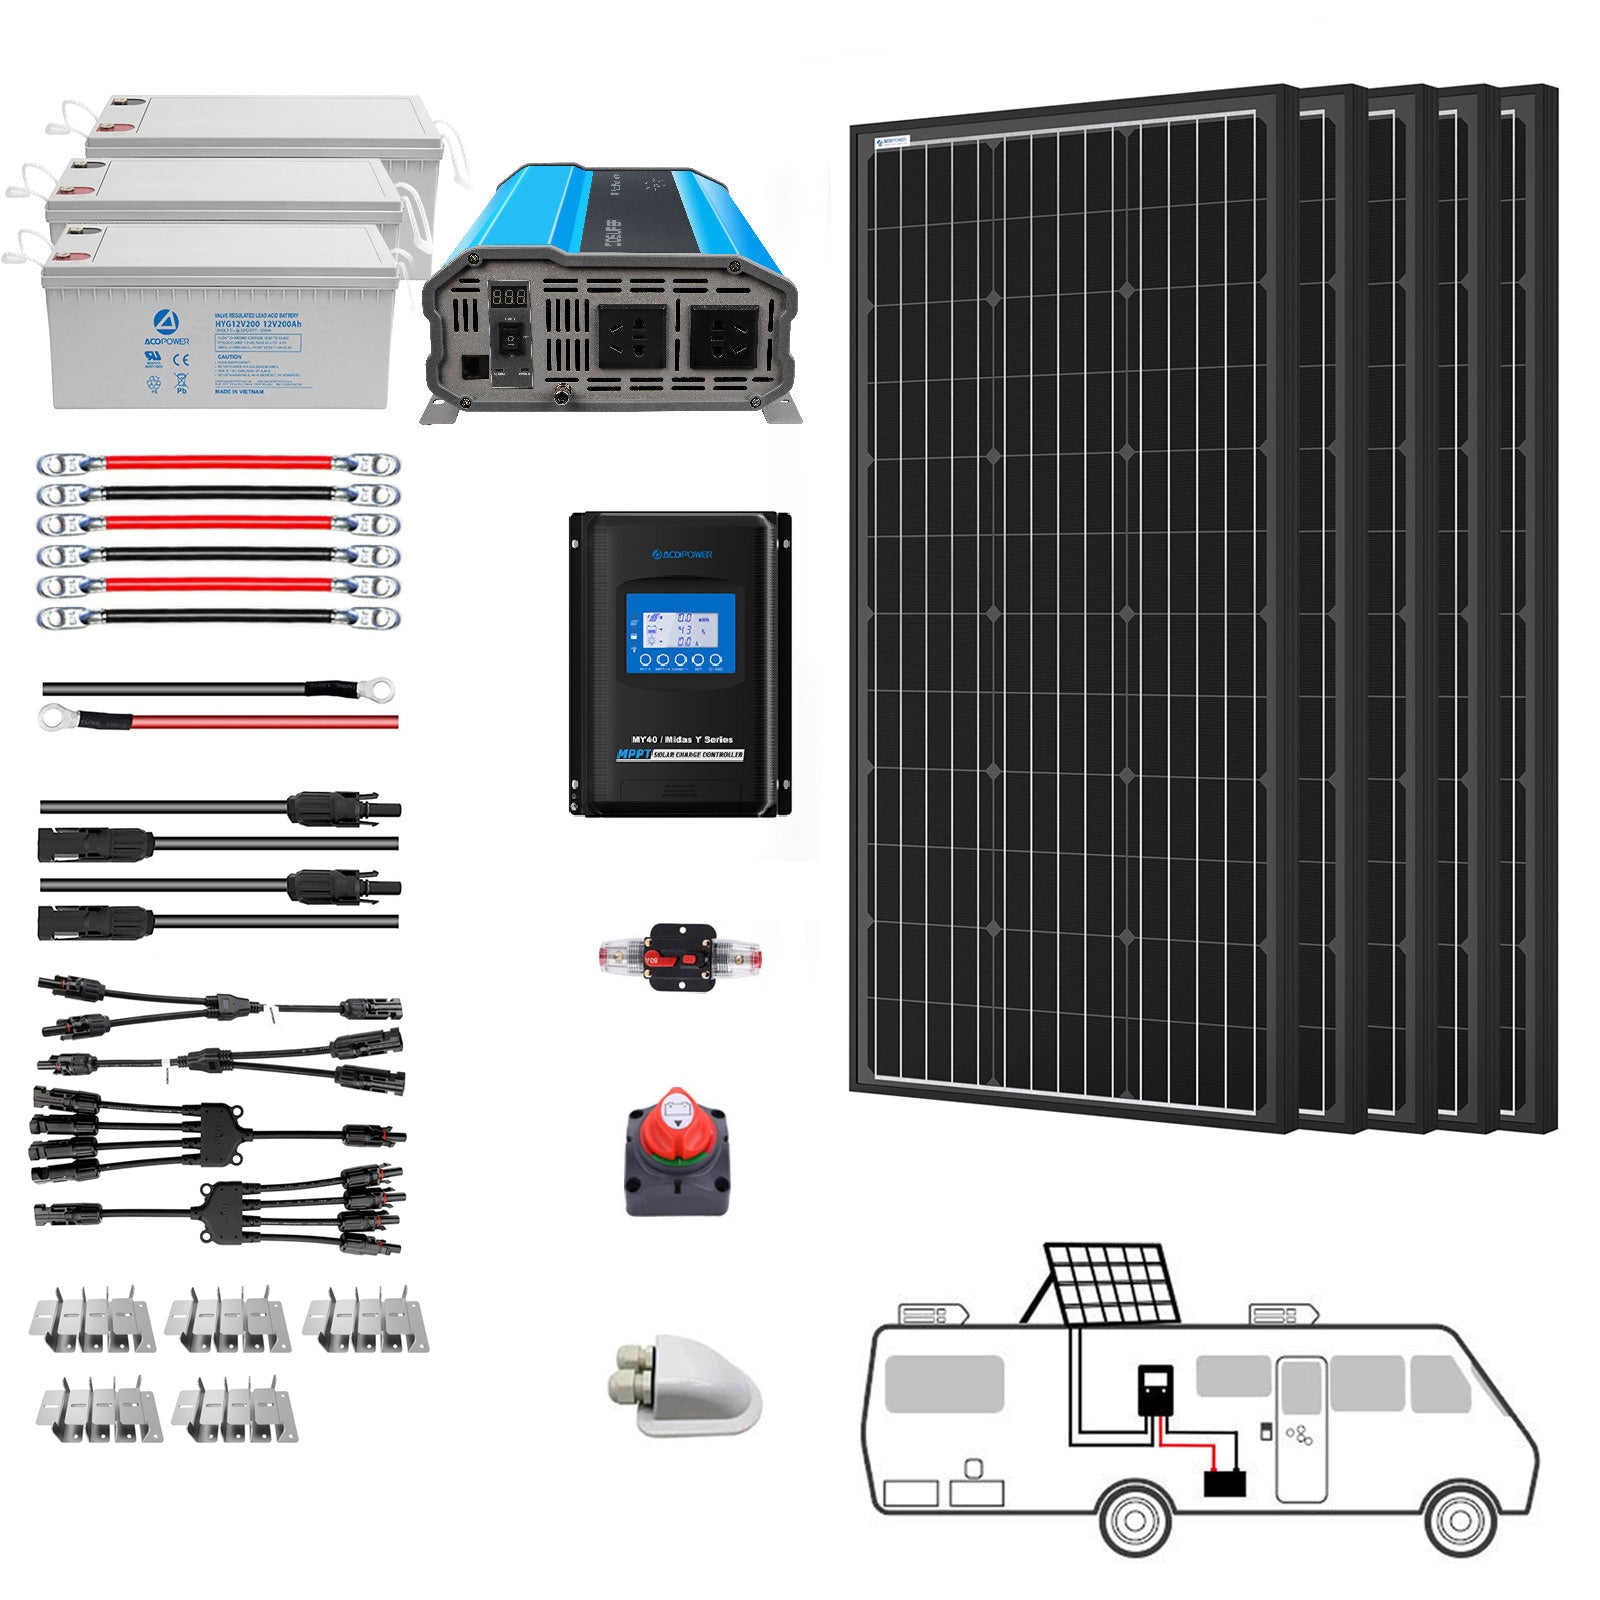 Sistema solar monovolumen ACOPOWER de 200 W para vehículos recreativos